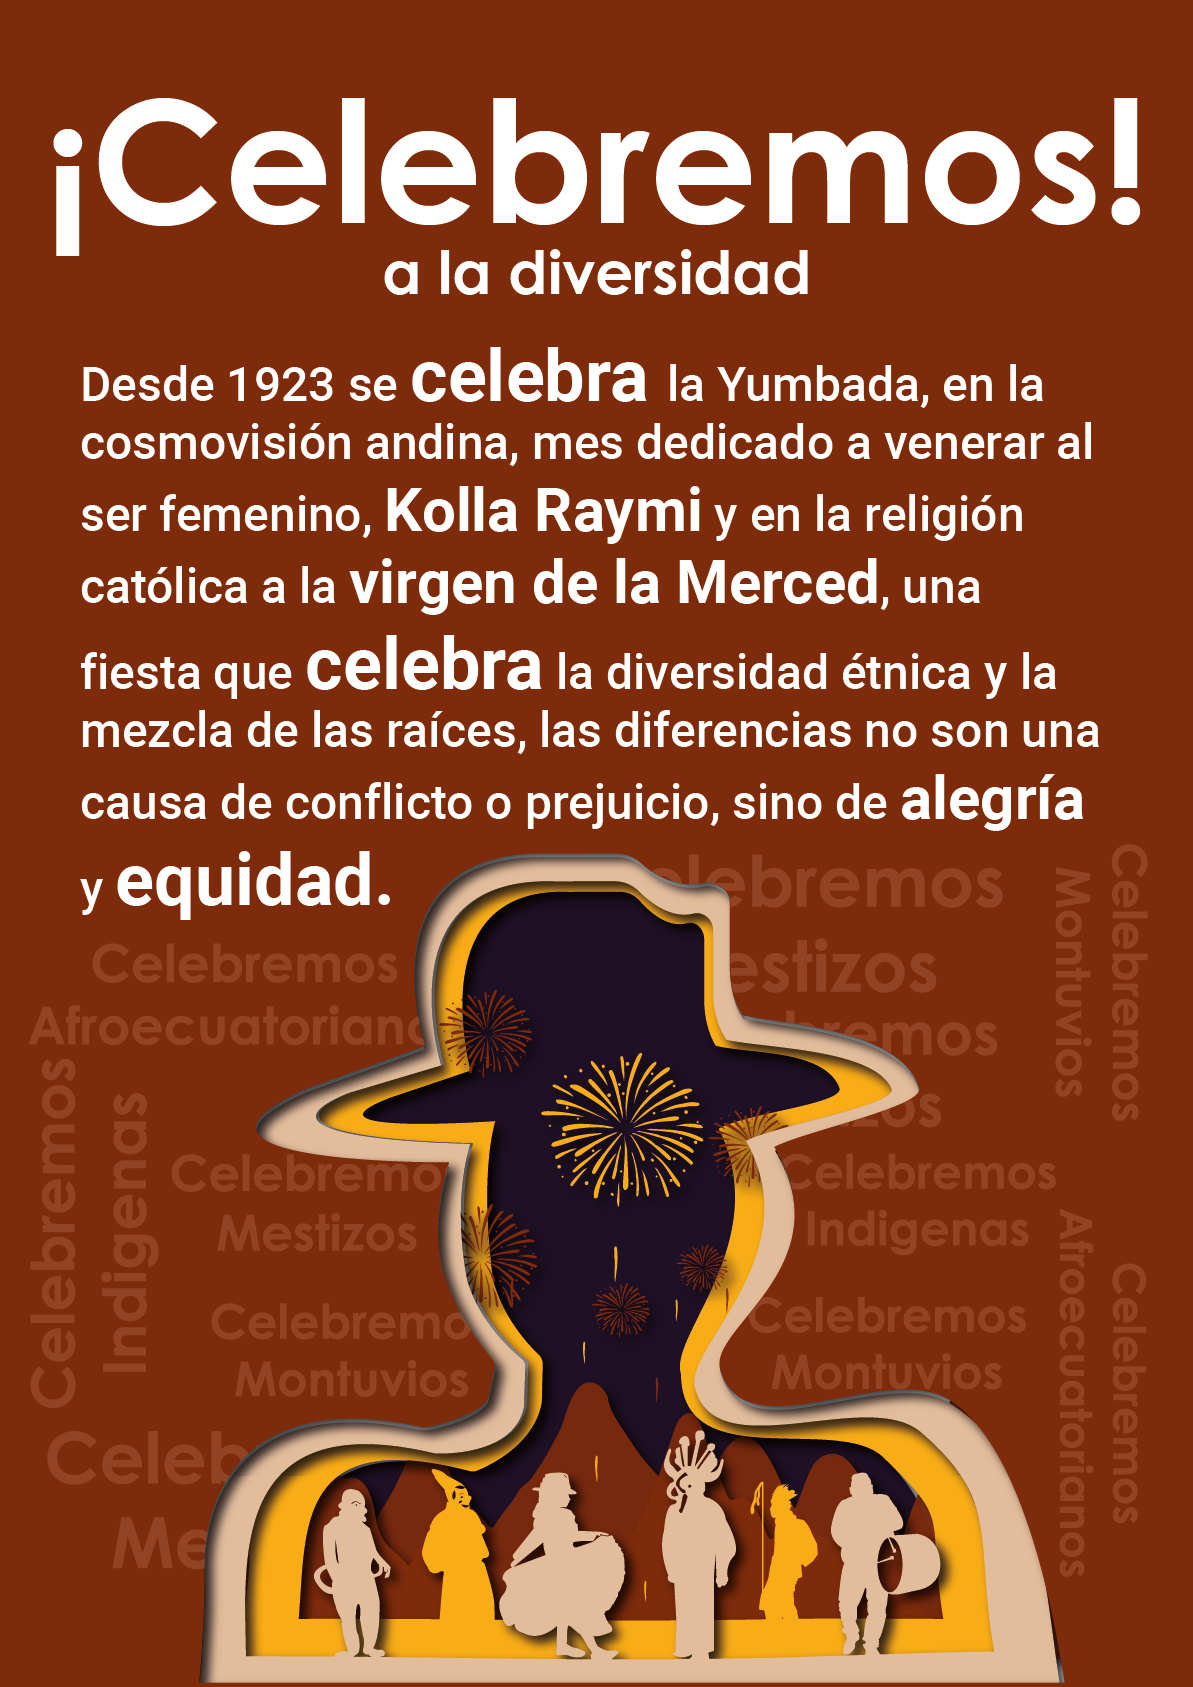 Diversity ETNICO etnic inca equidad papercut paperart cartel Barrios quito ecuador